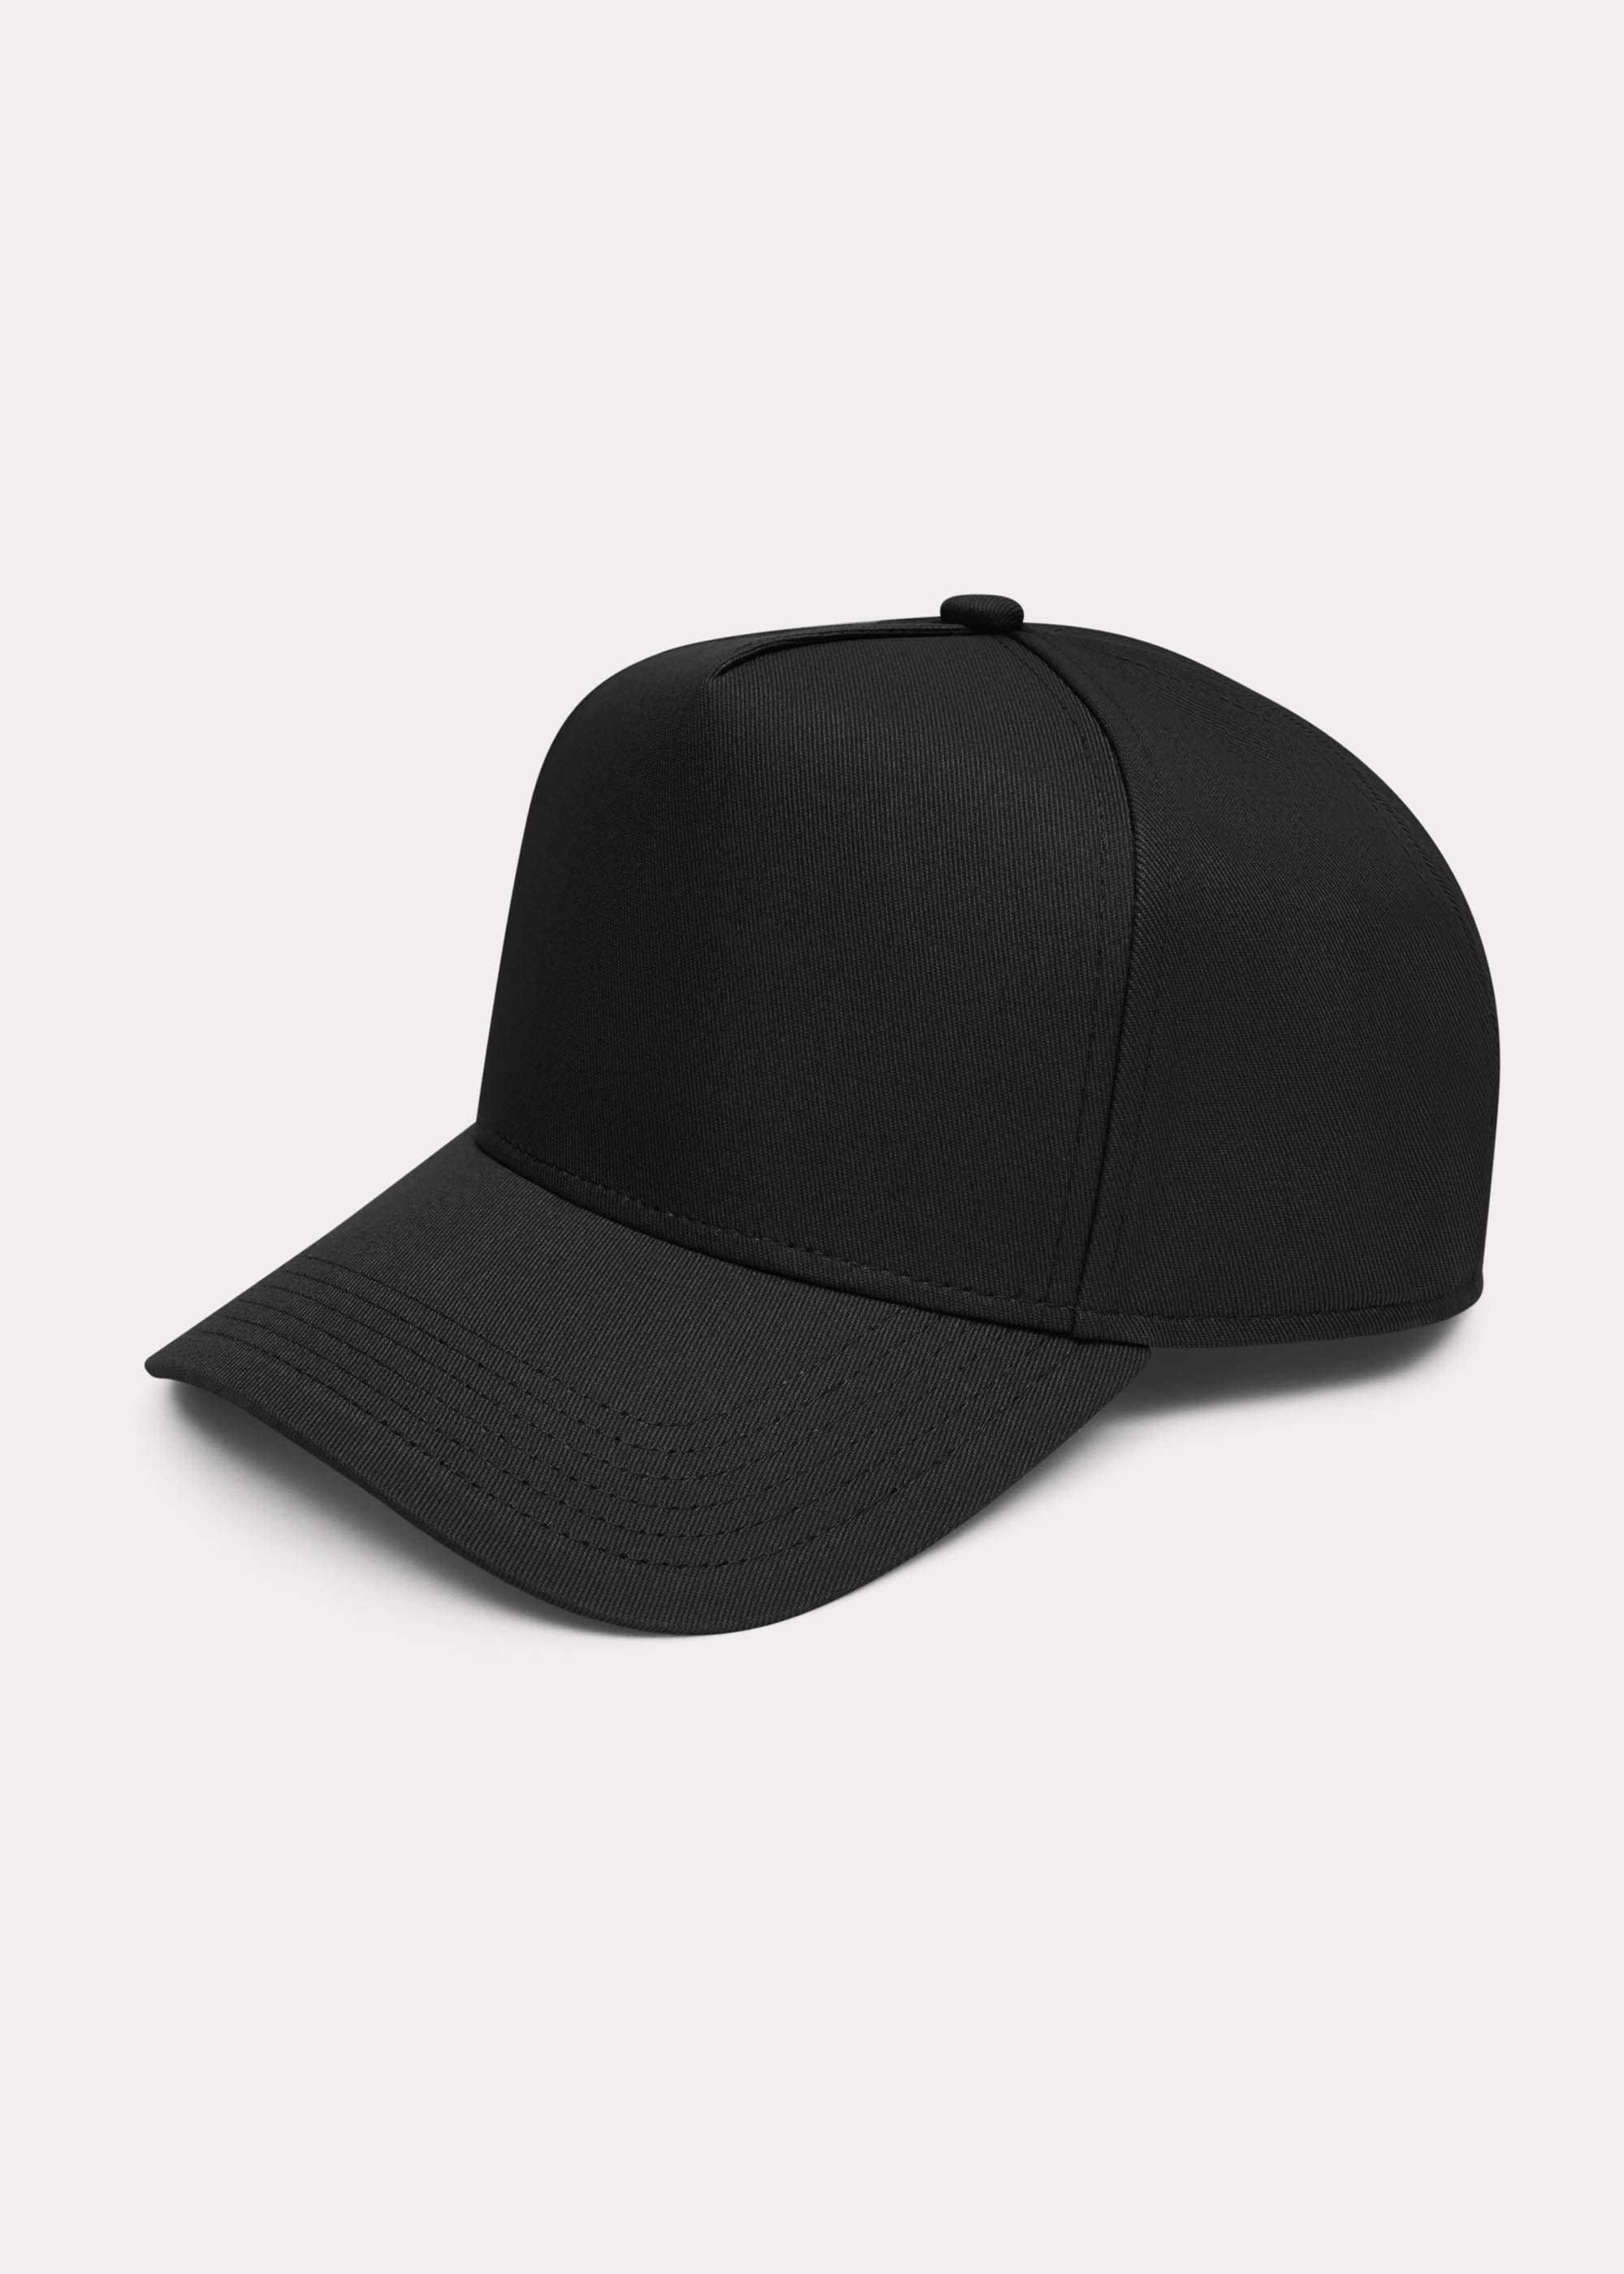 PLAIN CAP - BLACK – Royle Eleven